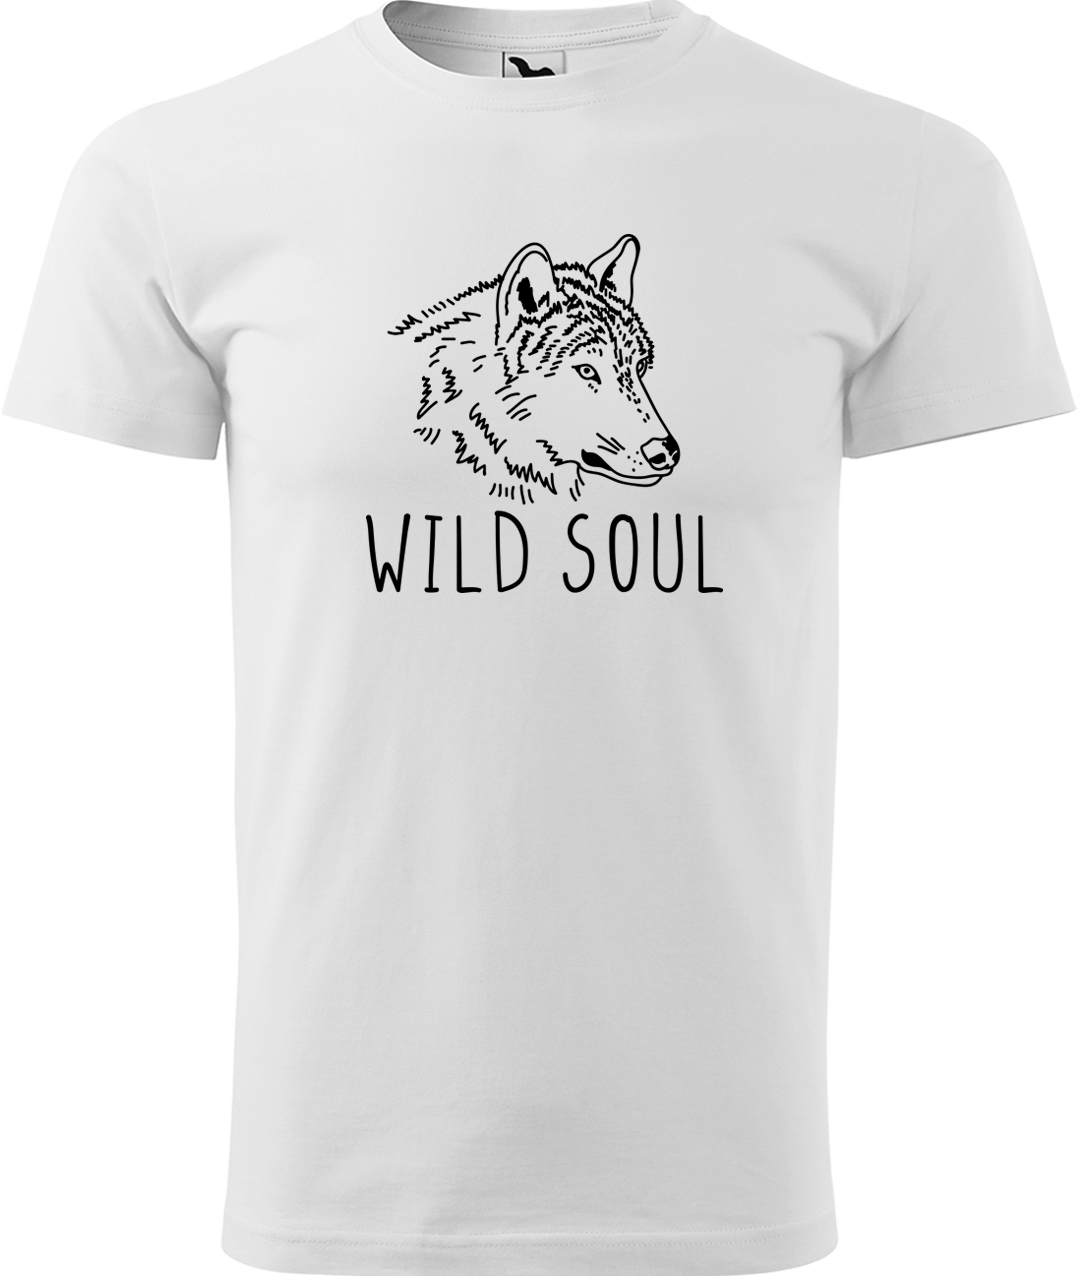 Pánské tričko s vlkem - Wild soul Velikost: L, Barva: Bílá (00), Střih: pánský